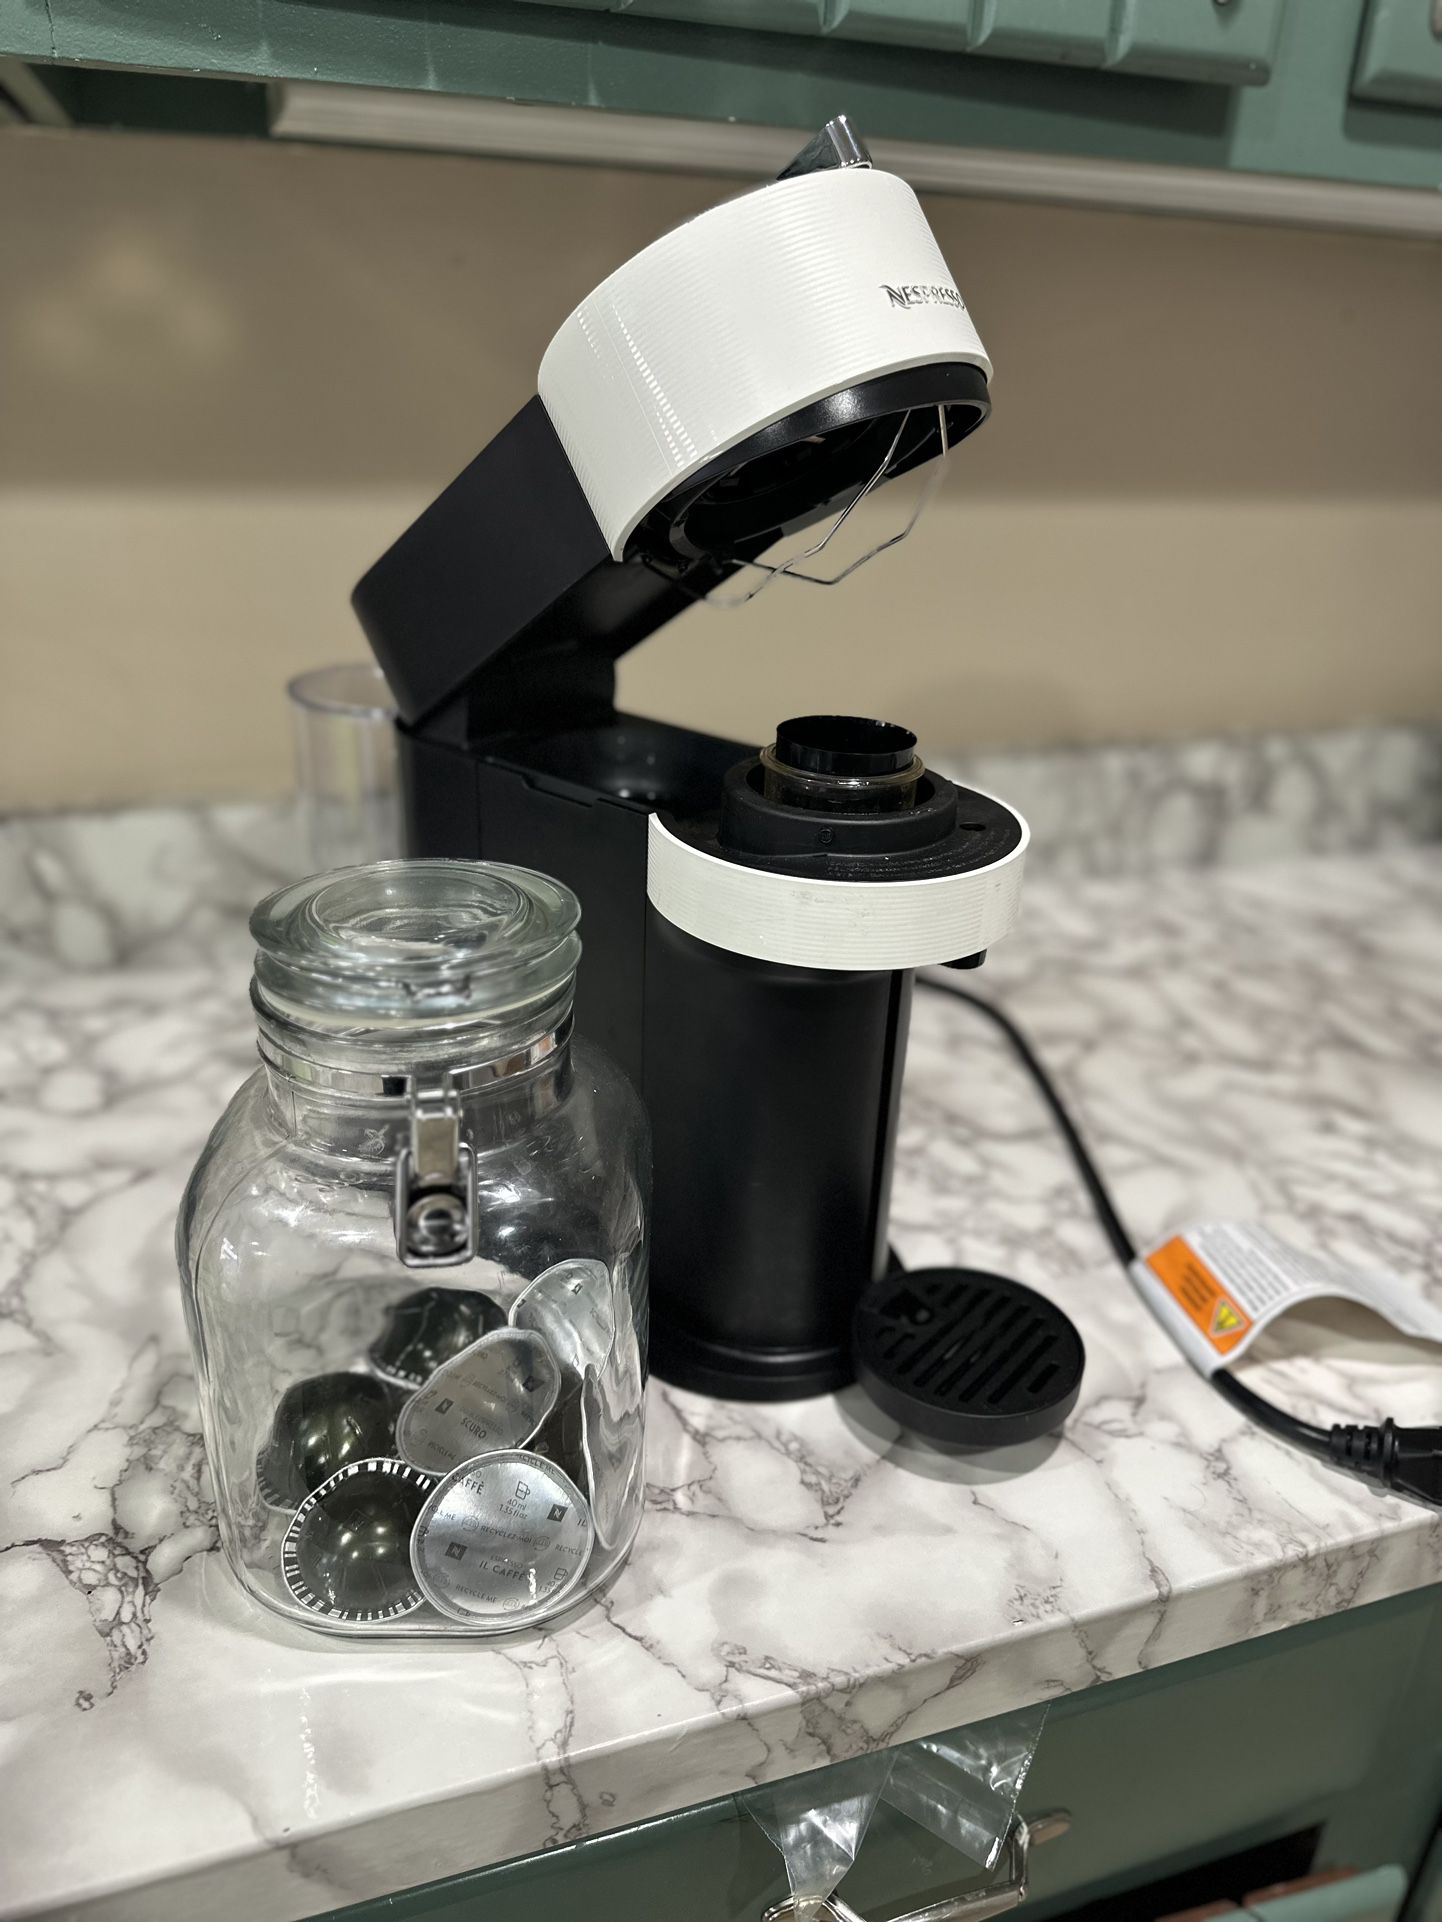 Nespresso Vertuo Next Coffee Maker and Espresso Machine by DeLonghi White/Black/Chrome Finish 